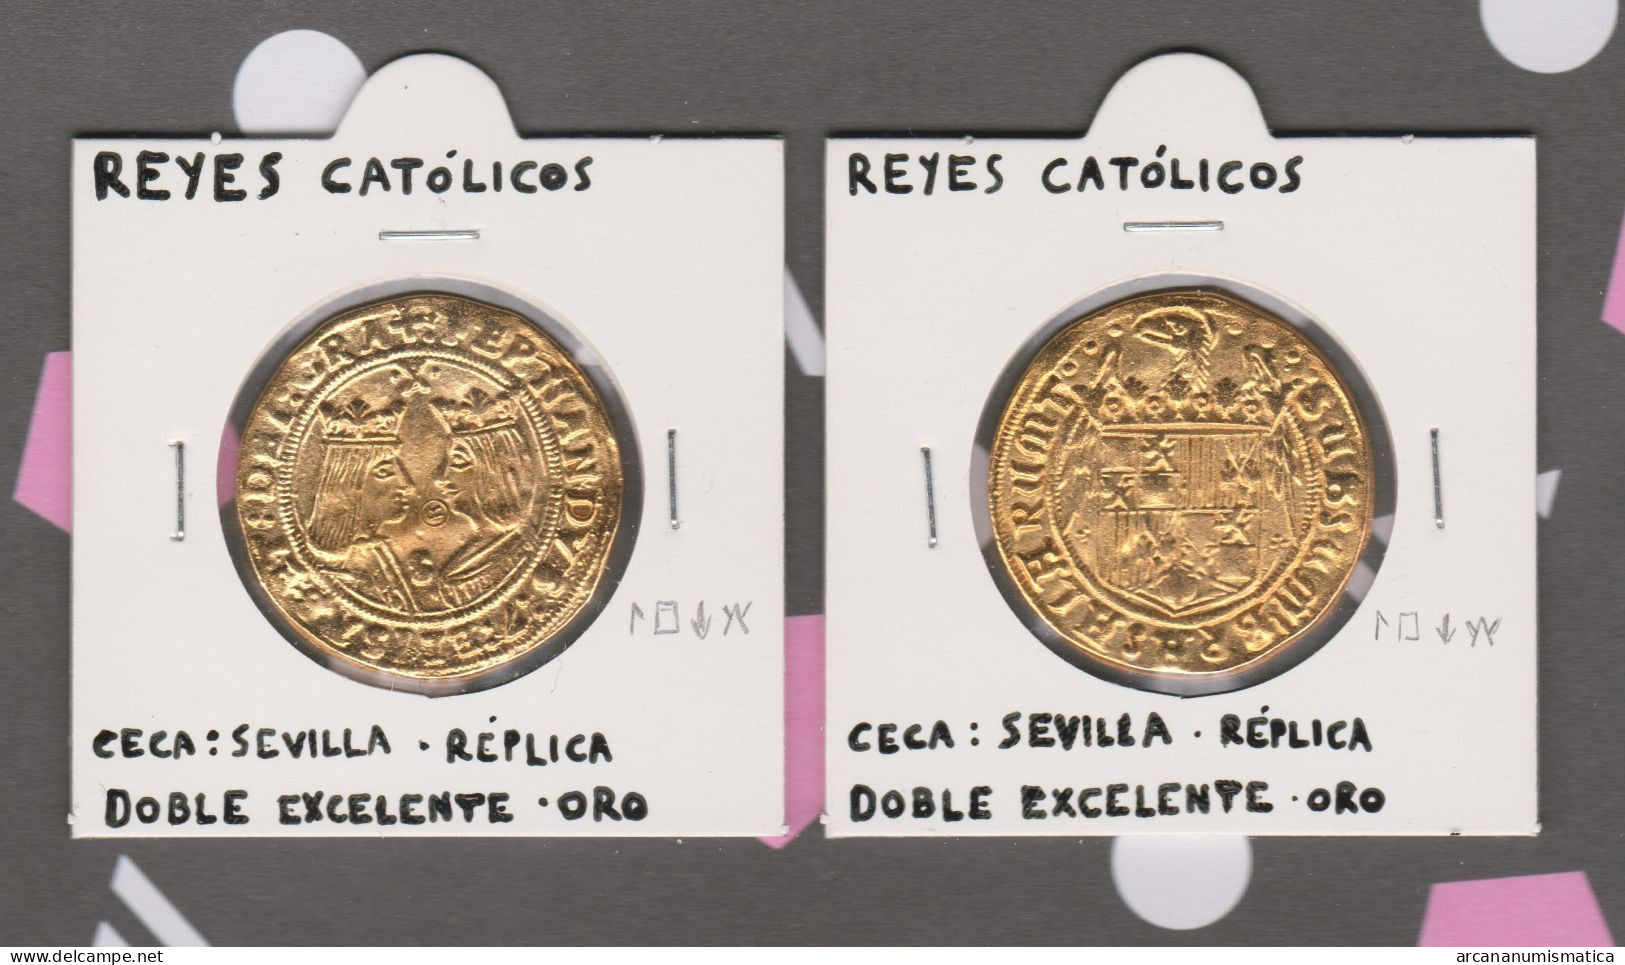 REYES CATOLICOS  DOBLE EXCELENTE - ORO CECA: SEVILLA  Réplica   T-DL-13.434 - Monedas Falsas